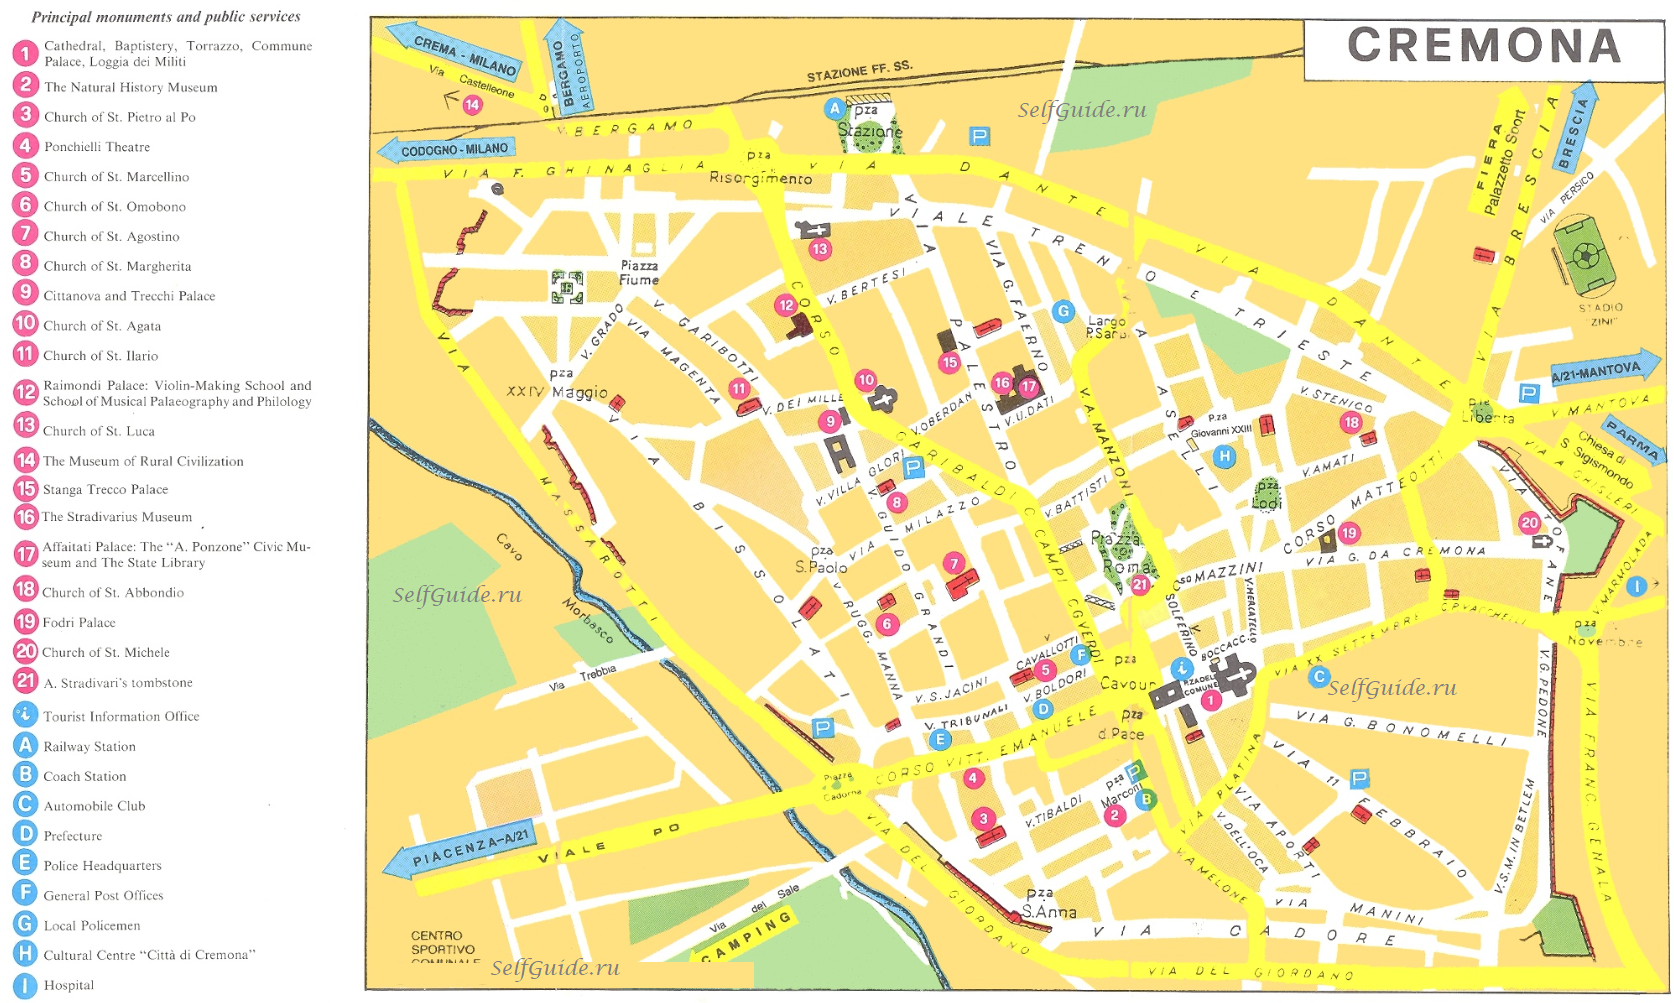 Cremona tourist map - туристическая карта Кремоны